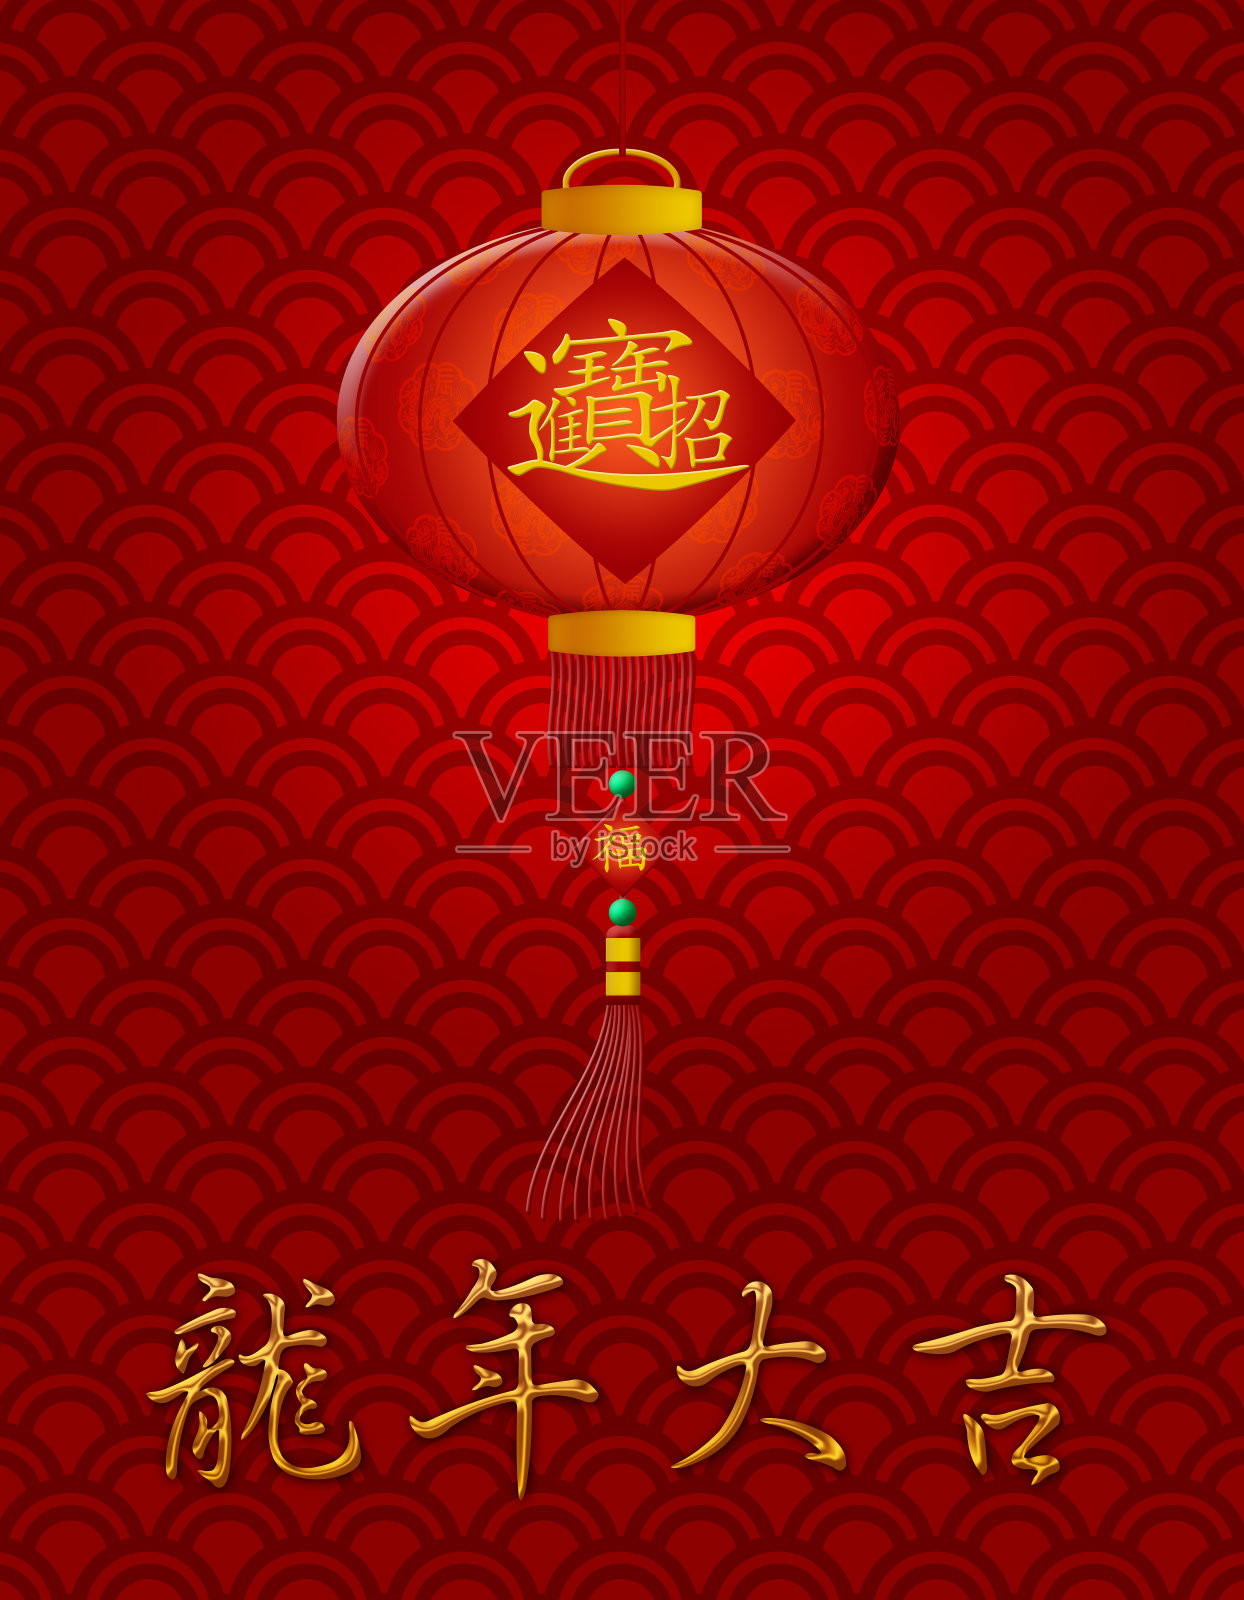 中国新年龙灯鳞片图案背景插画图片素材